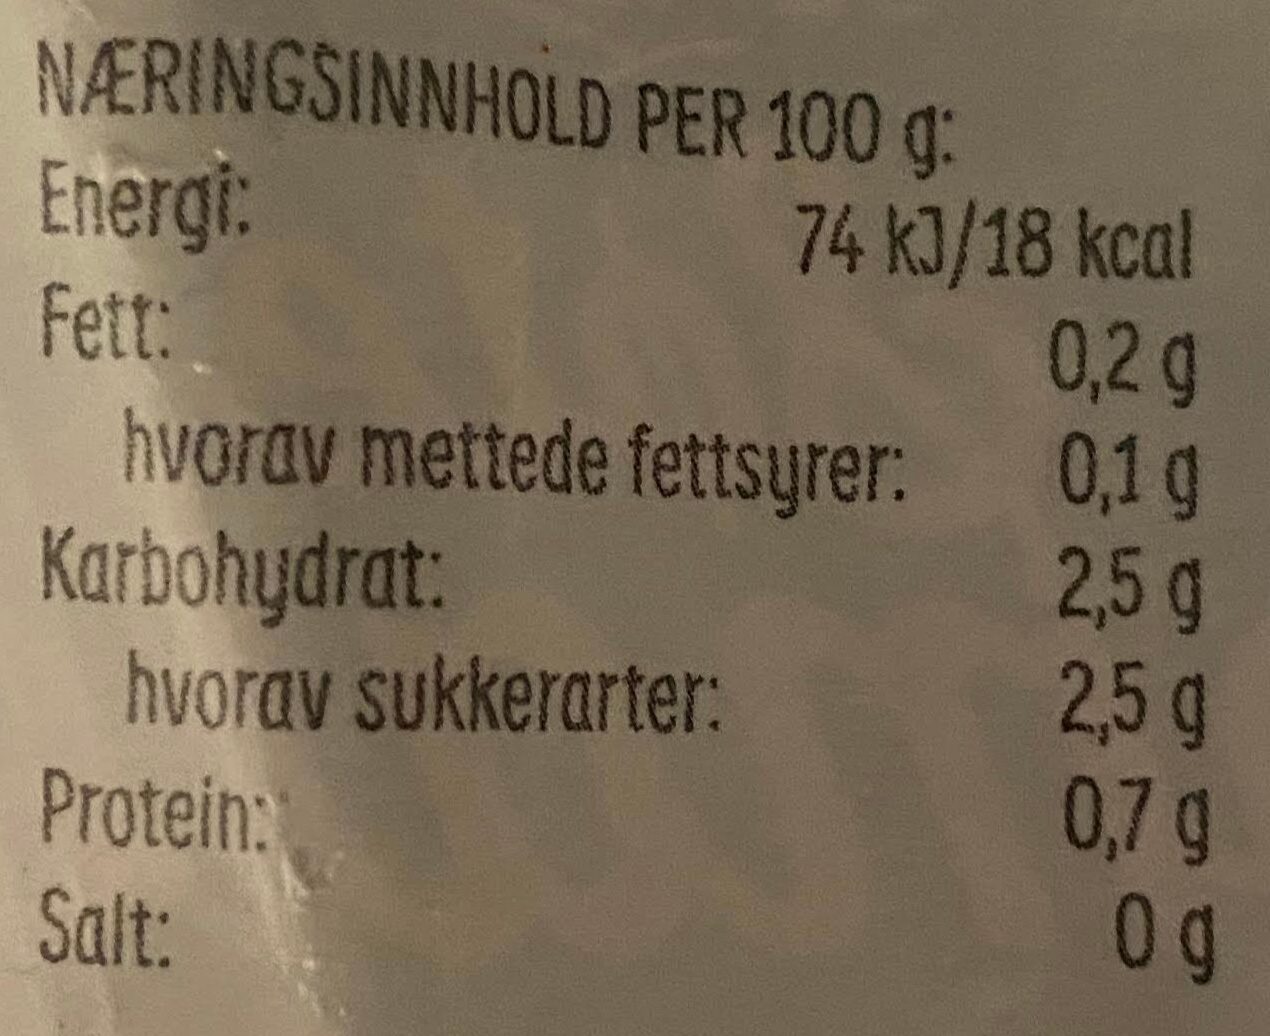 Season Søte tomater - Tableau nutritionnel - en